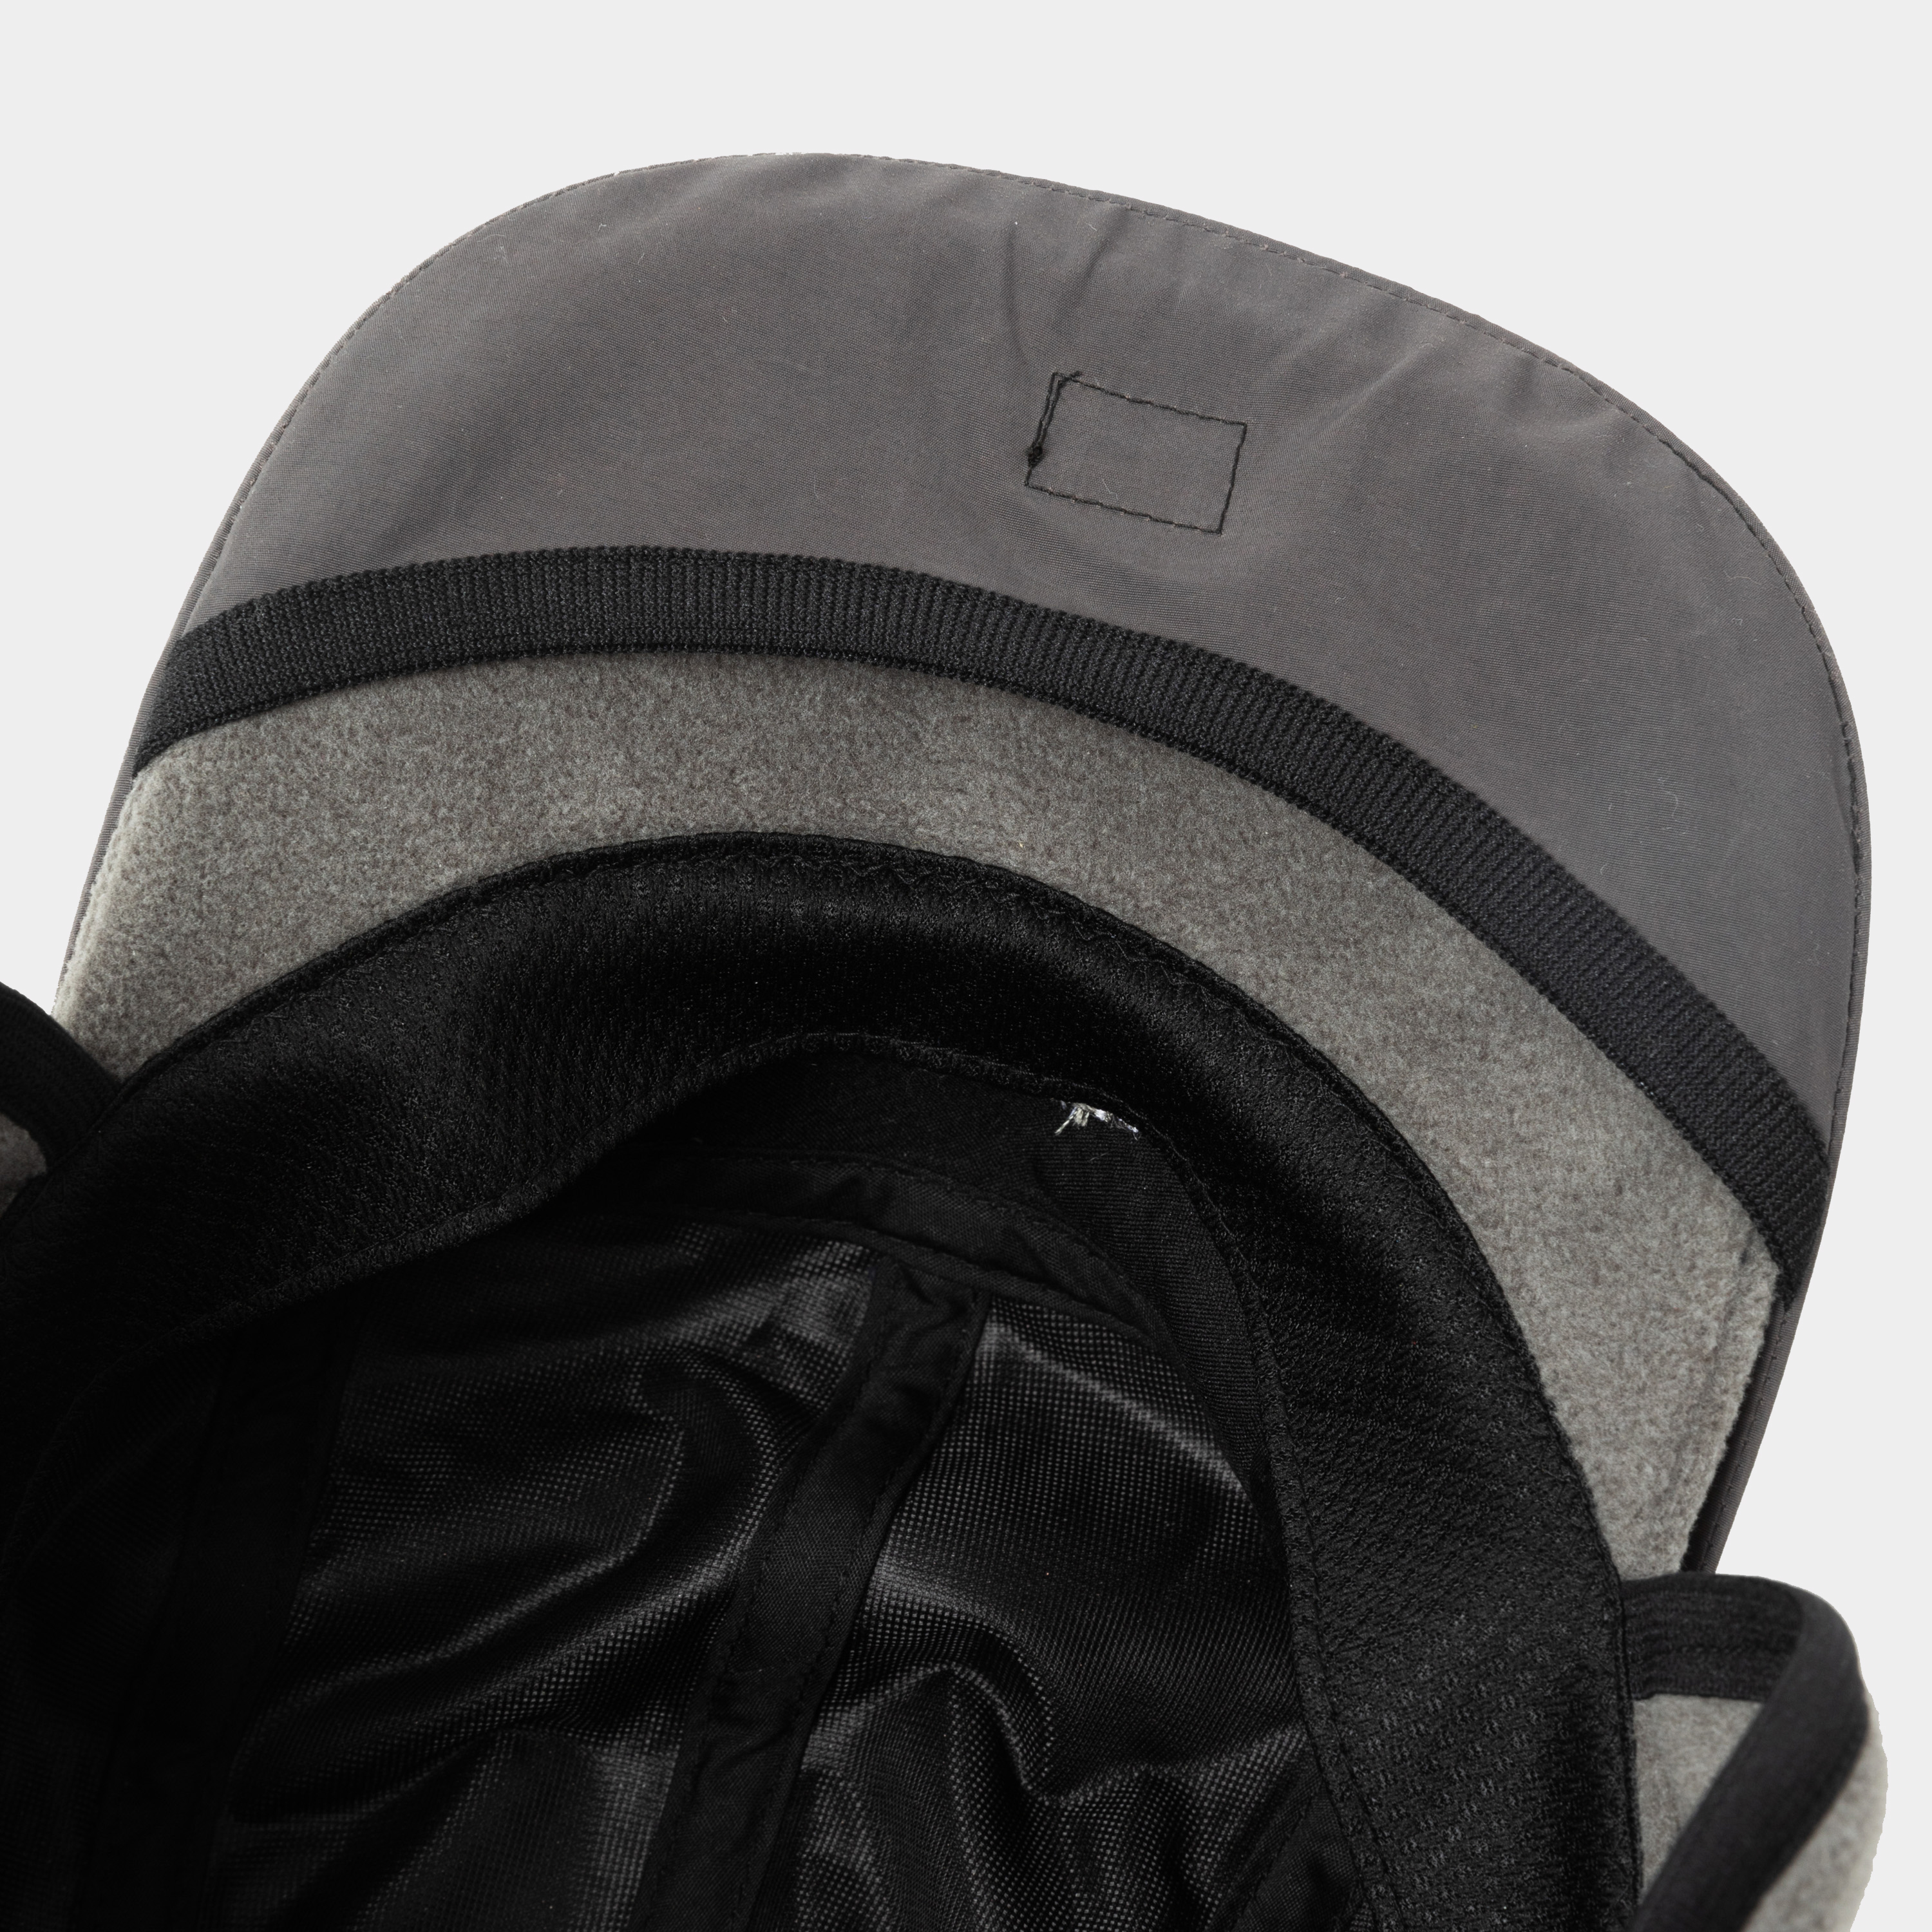 Polartec® Fleece Cover Cap/Charcoal